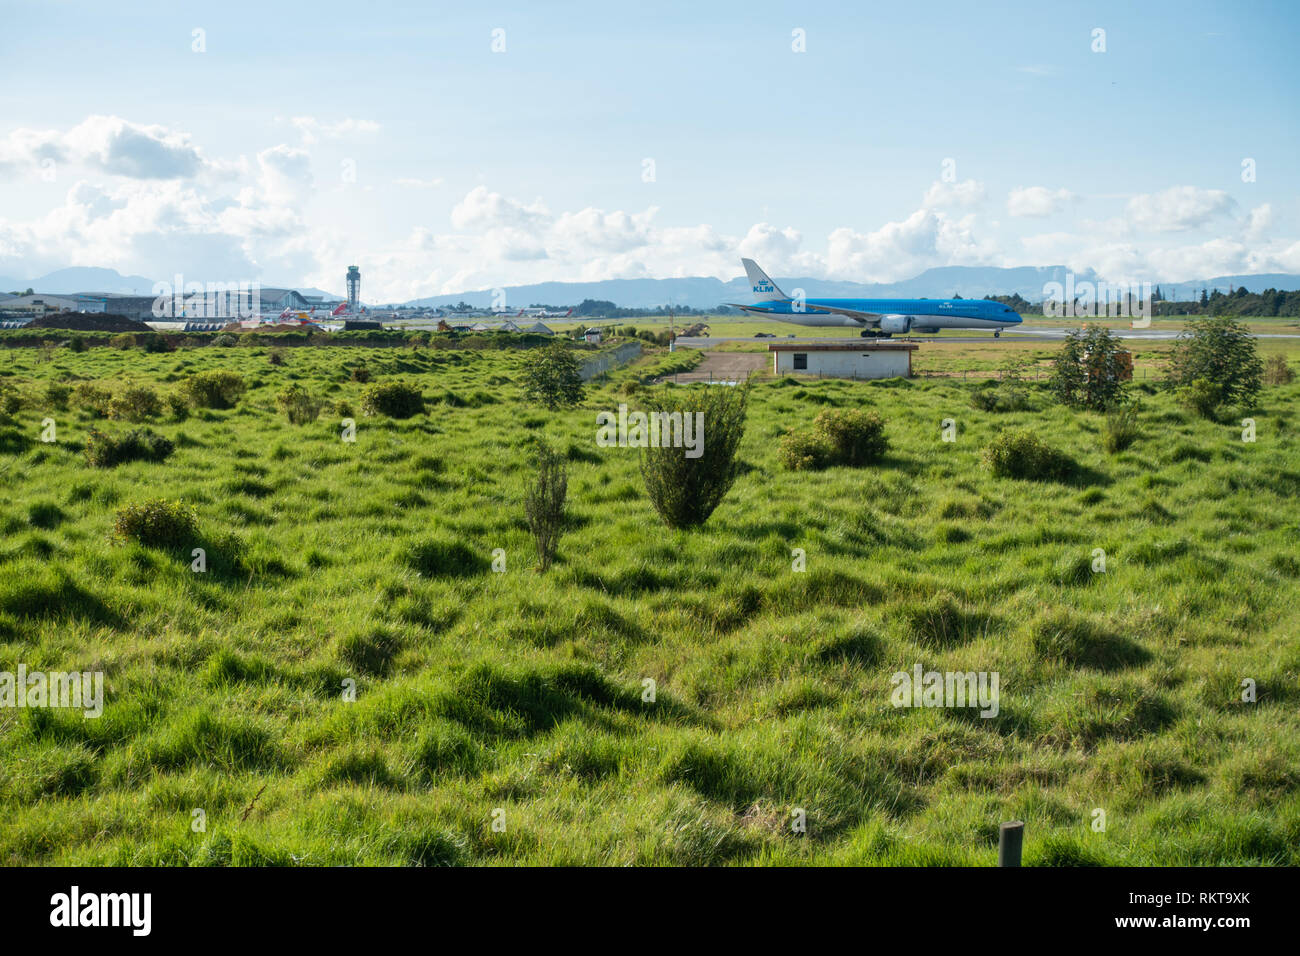 Césped verde y exuberante vegetación que rodea las pistas de aeropuerto como KLM Boeing 787-9 alineando para despegar de la pista 31R en Bogotá, Colombia Foto de stock